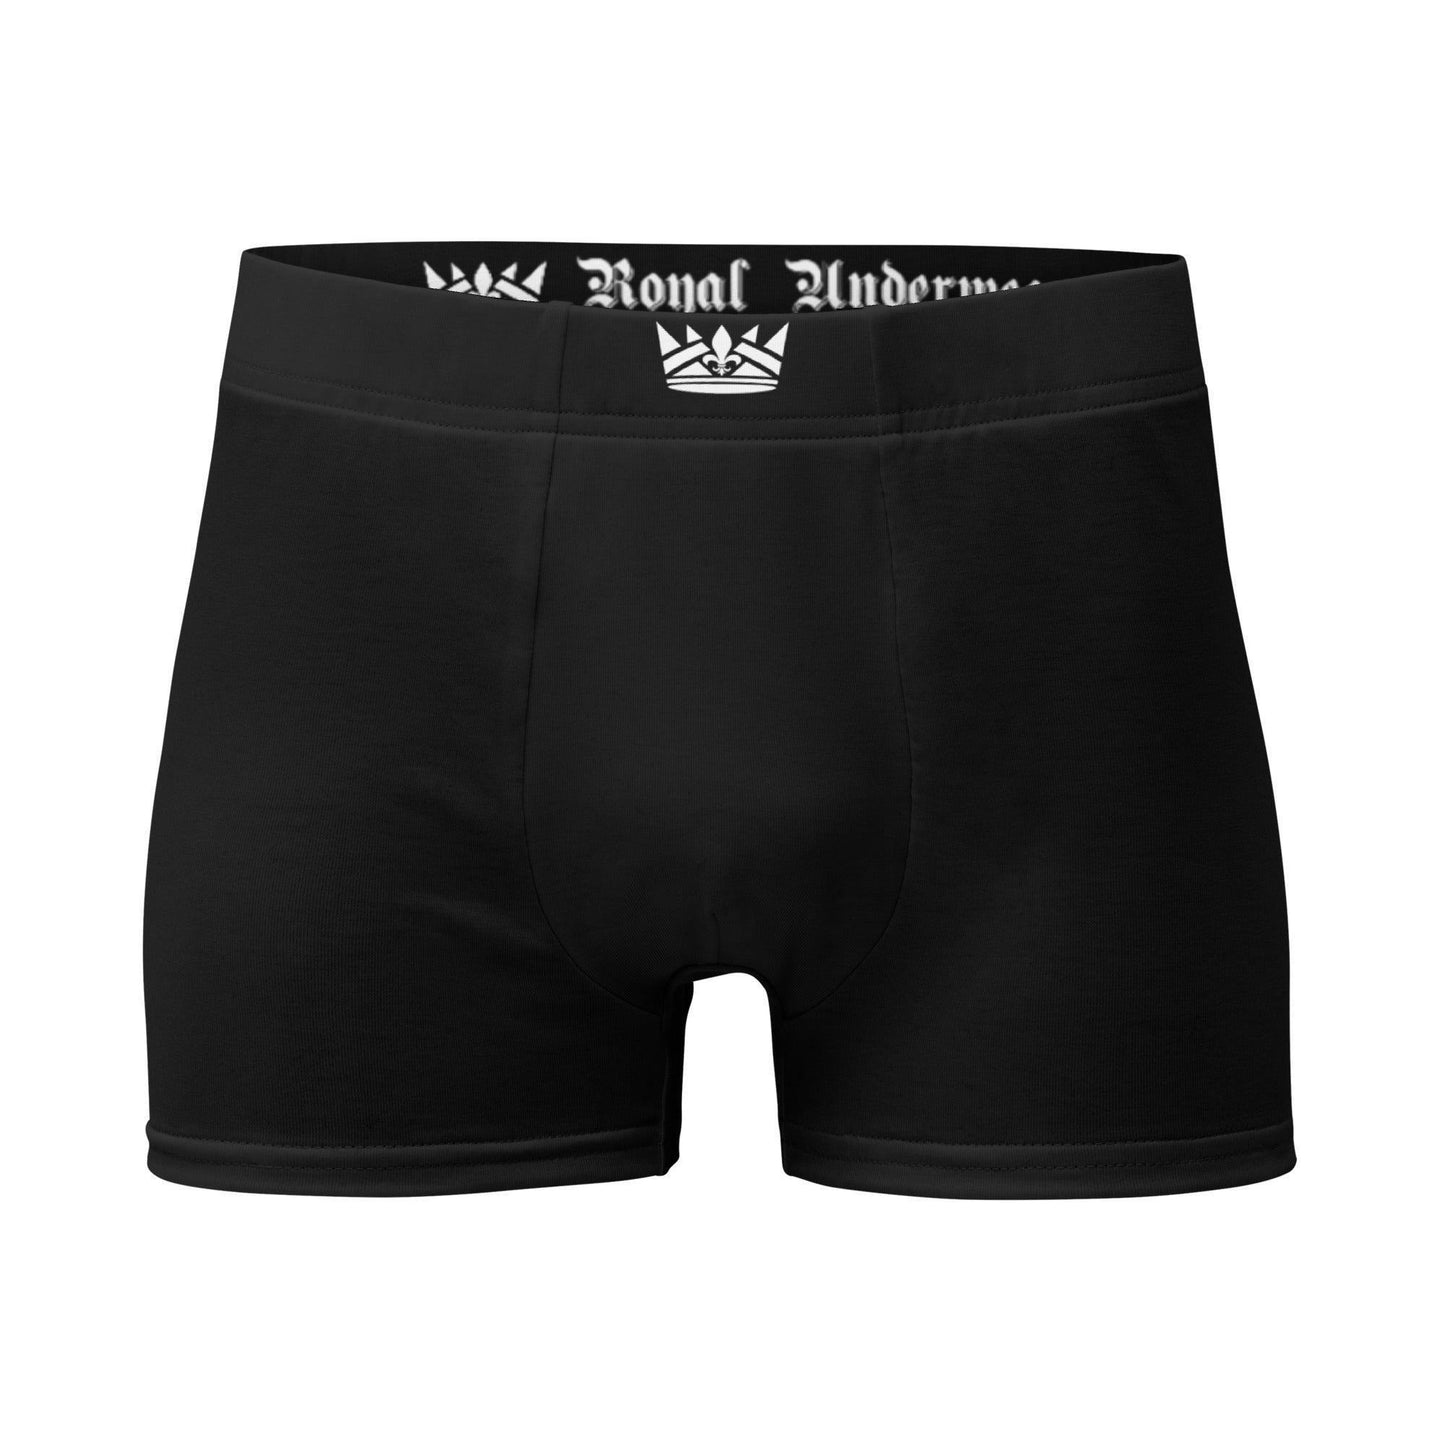 Schwarze Royal Underwear Boxershorts -- Schwarze Royal Underwear Boxershorts - undefined Boxershorts | JLR Design